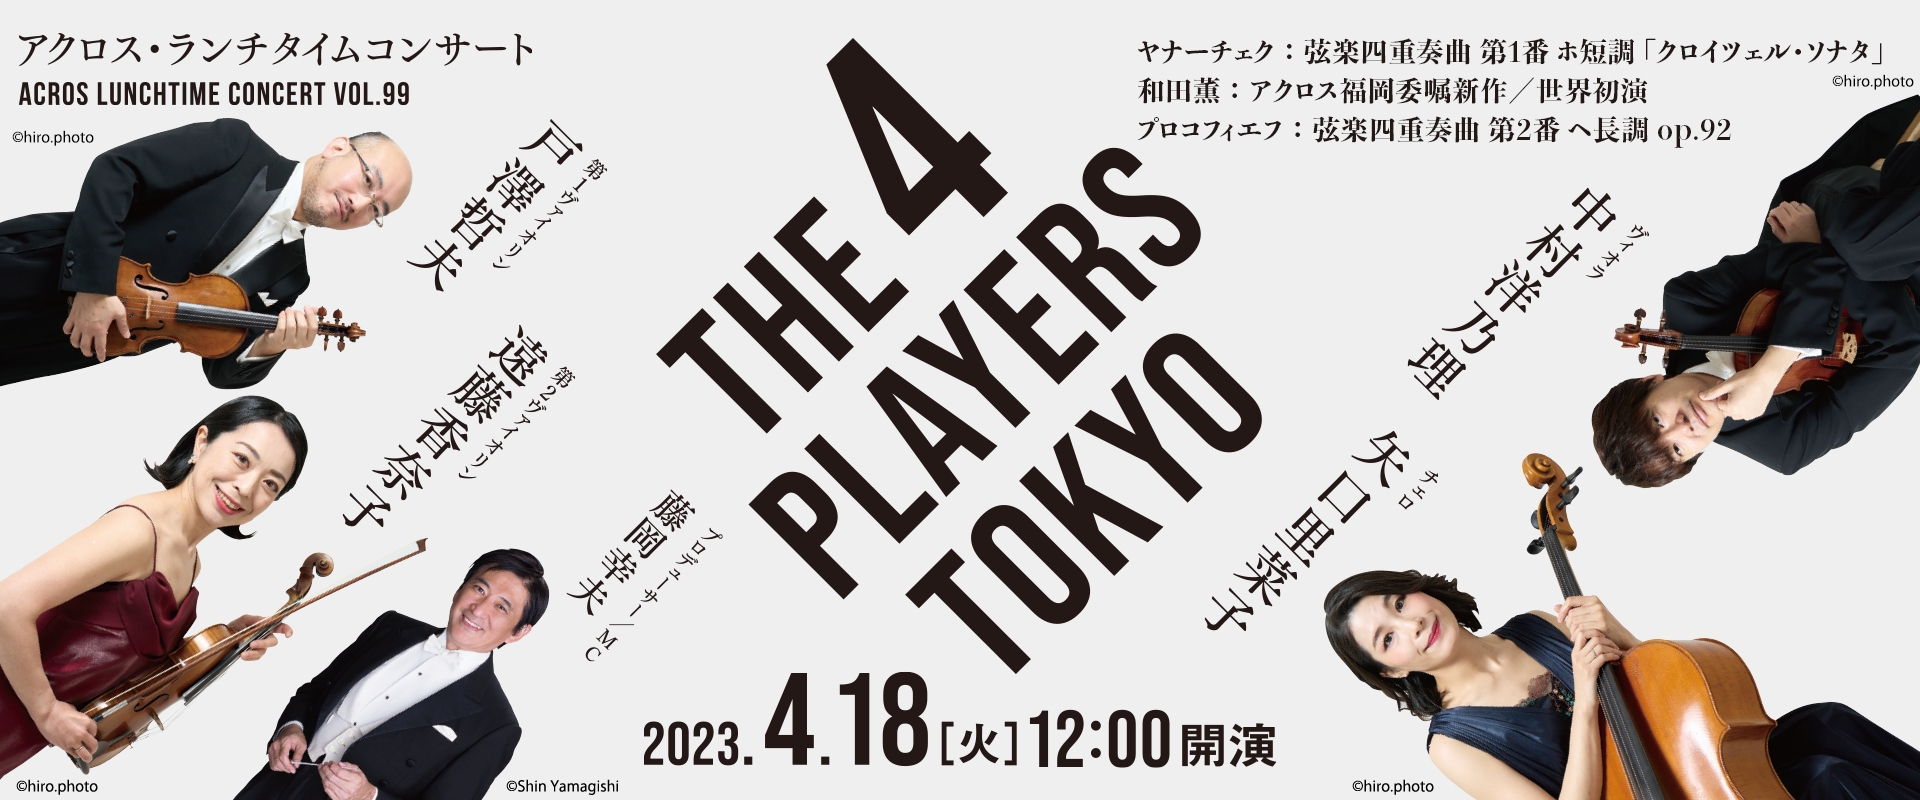 アクロス・ランチタイムコンサートvol.99 THE 4 PLAYERS TOKYO